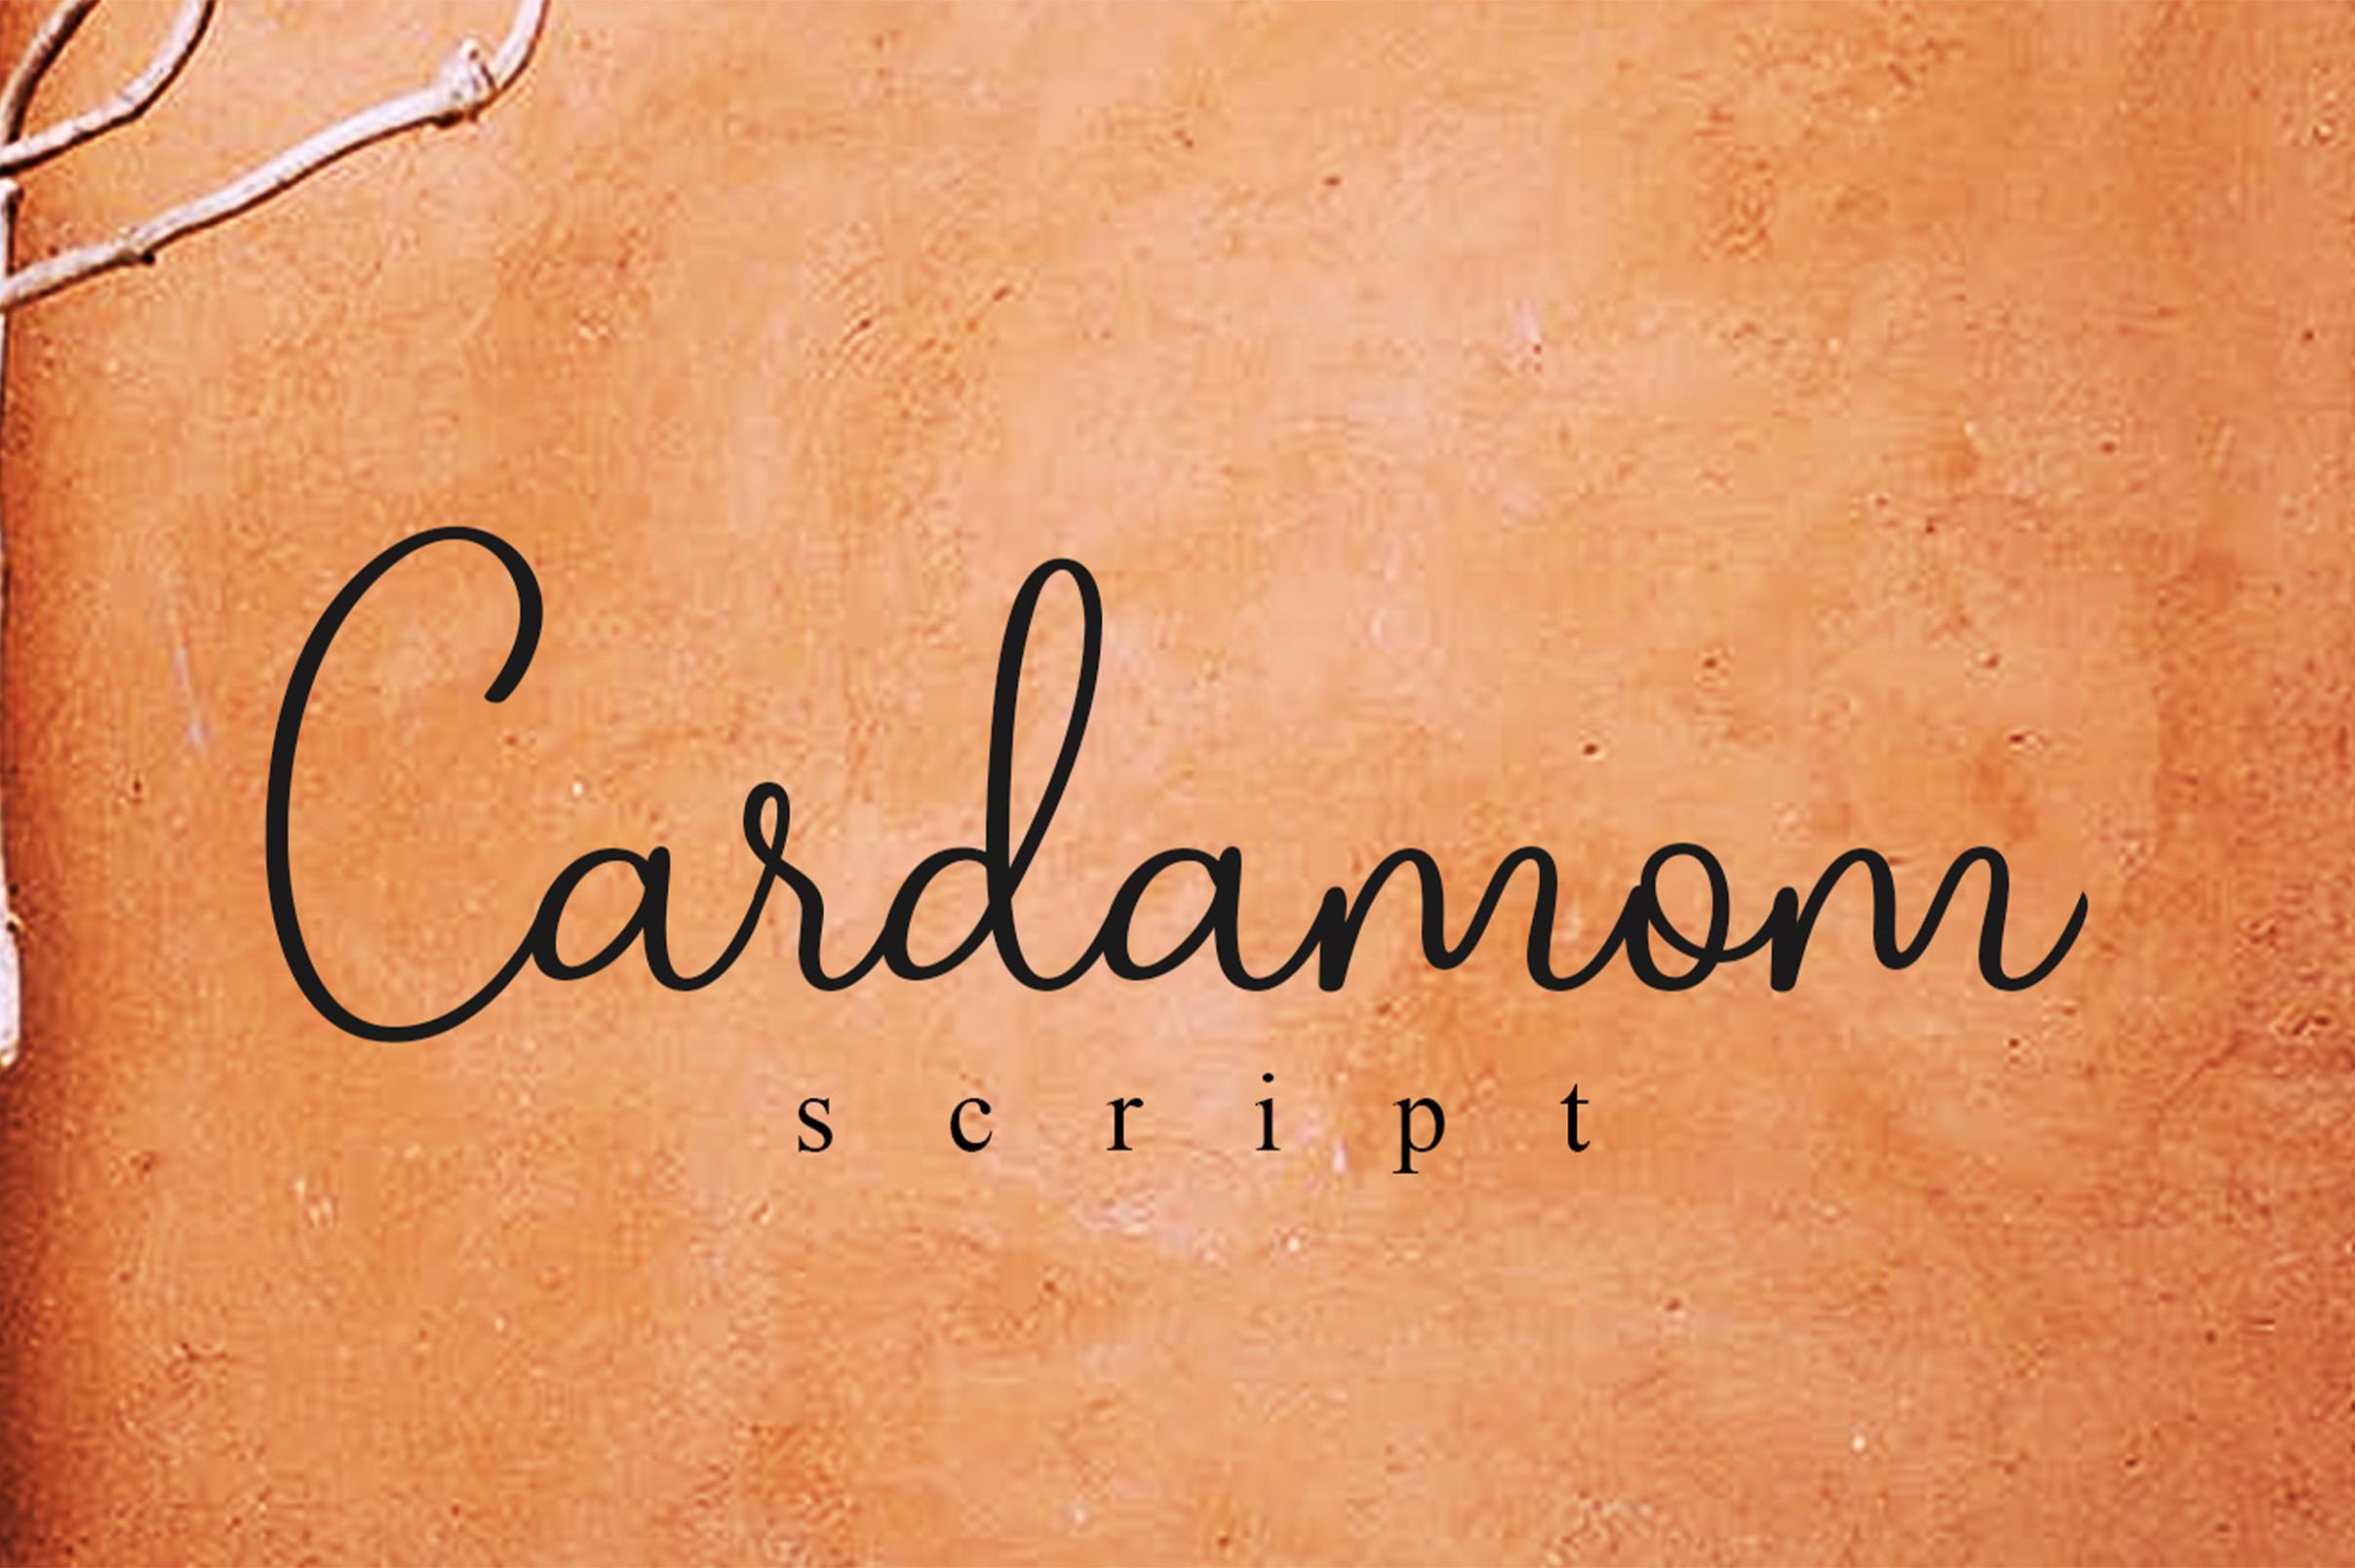 Cardamom Script Font